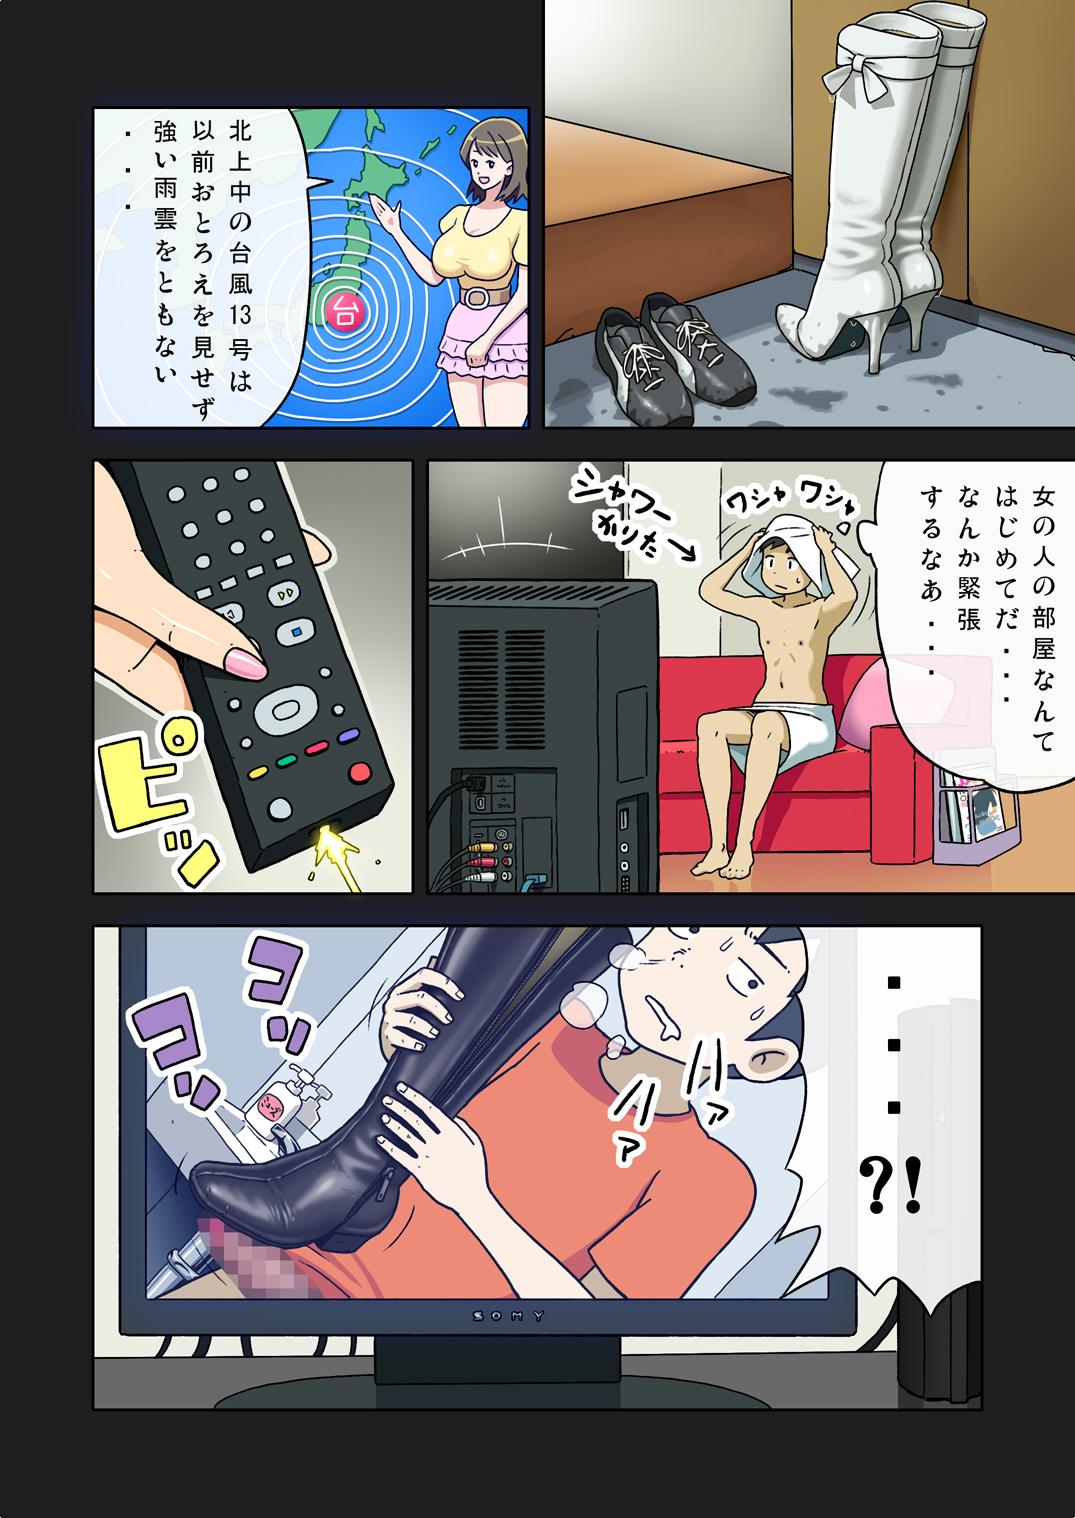 [Enka Boots] Enka Boots no Manga 1 - Juku no Sensei ga Joou-sama V2.0 7